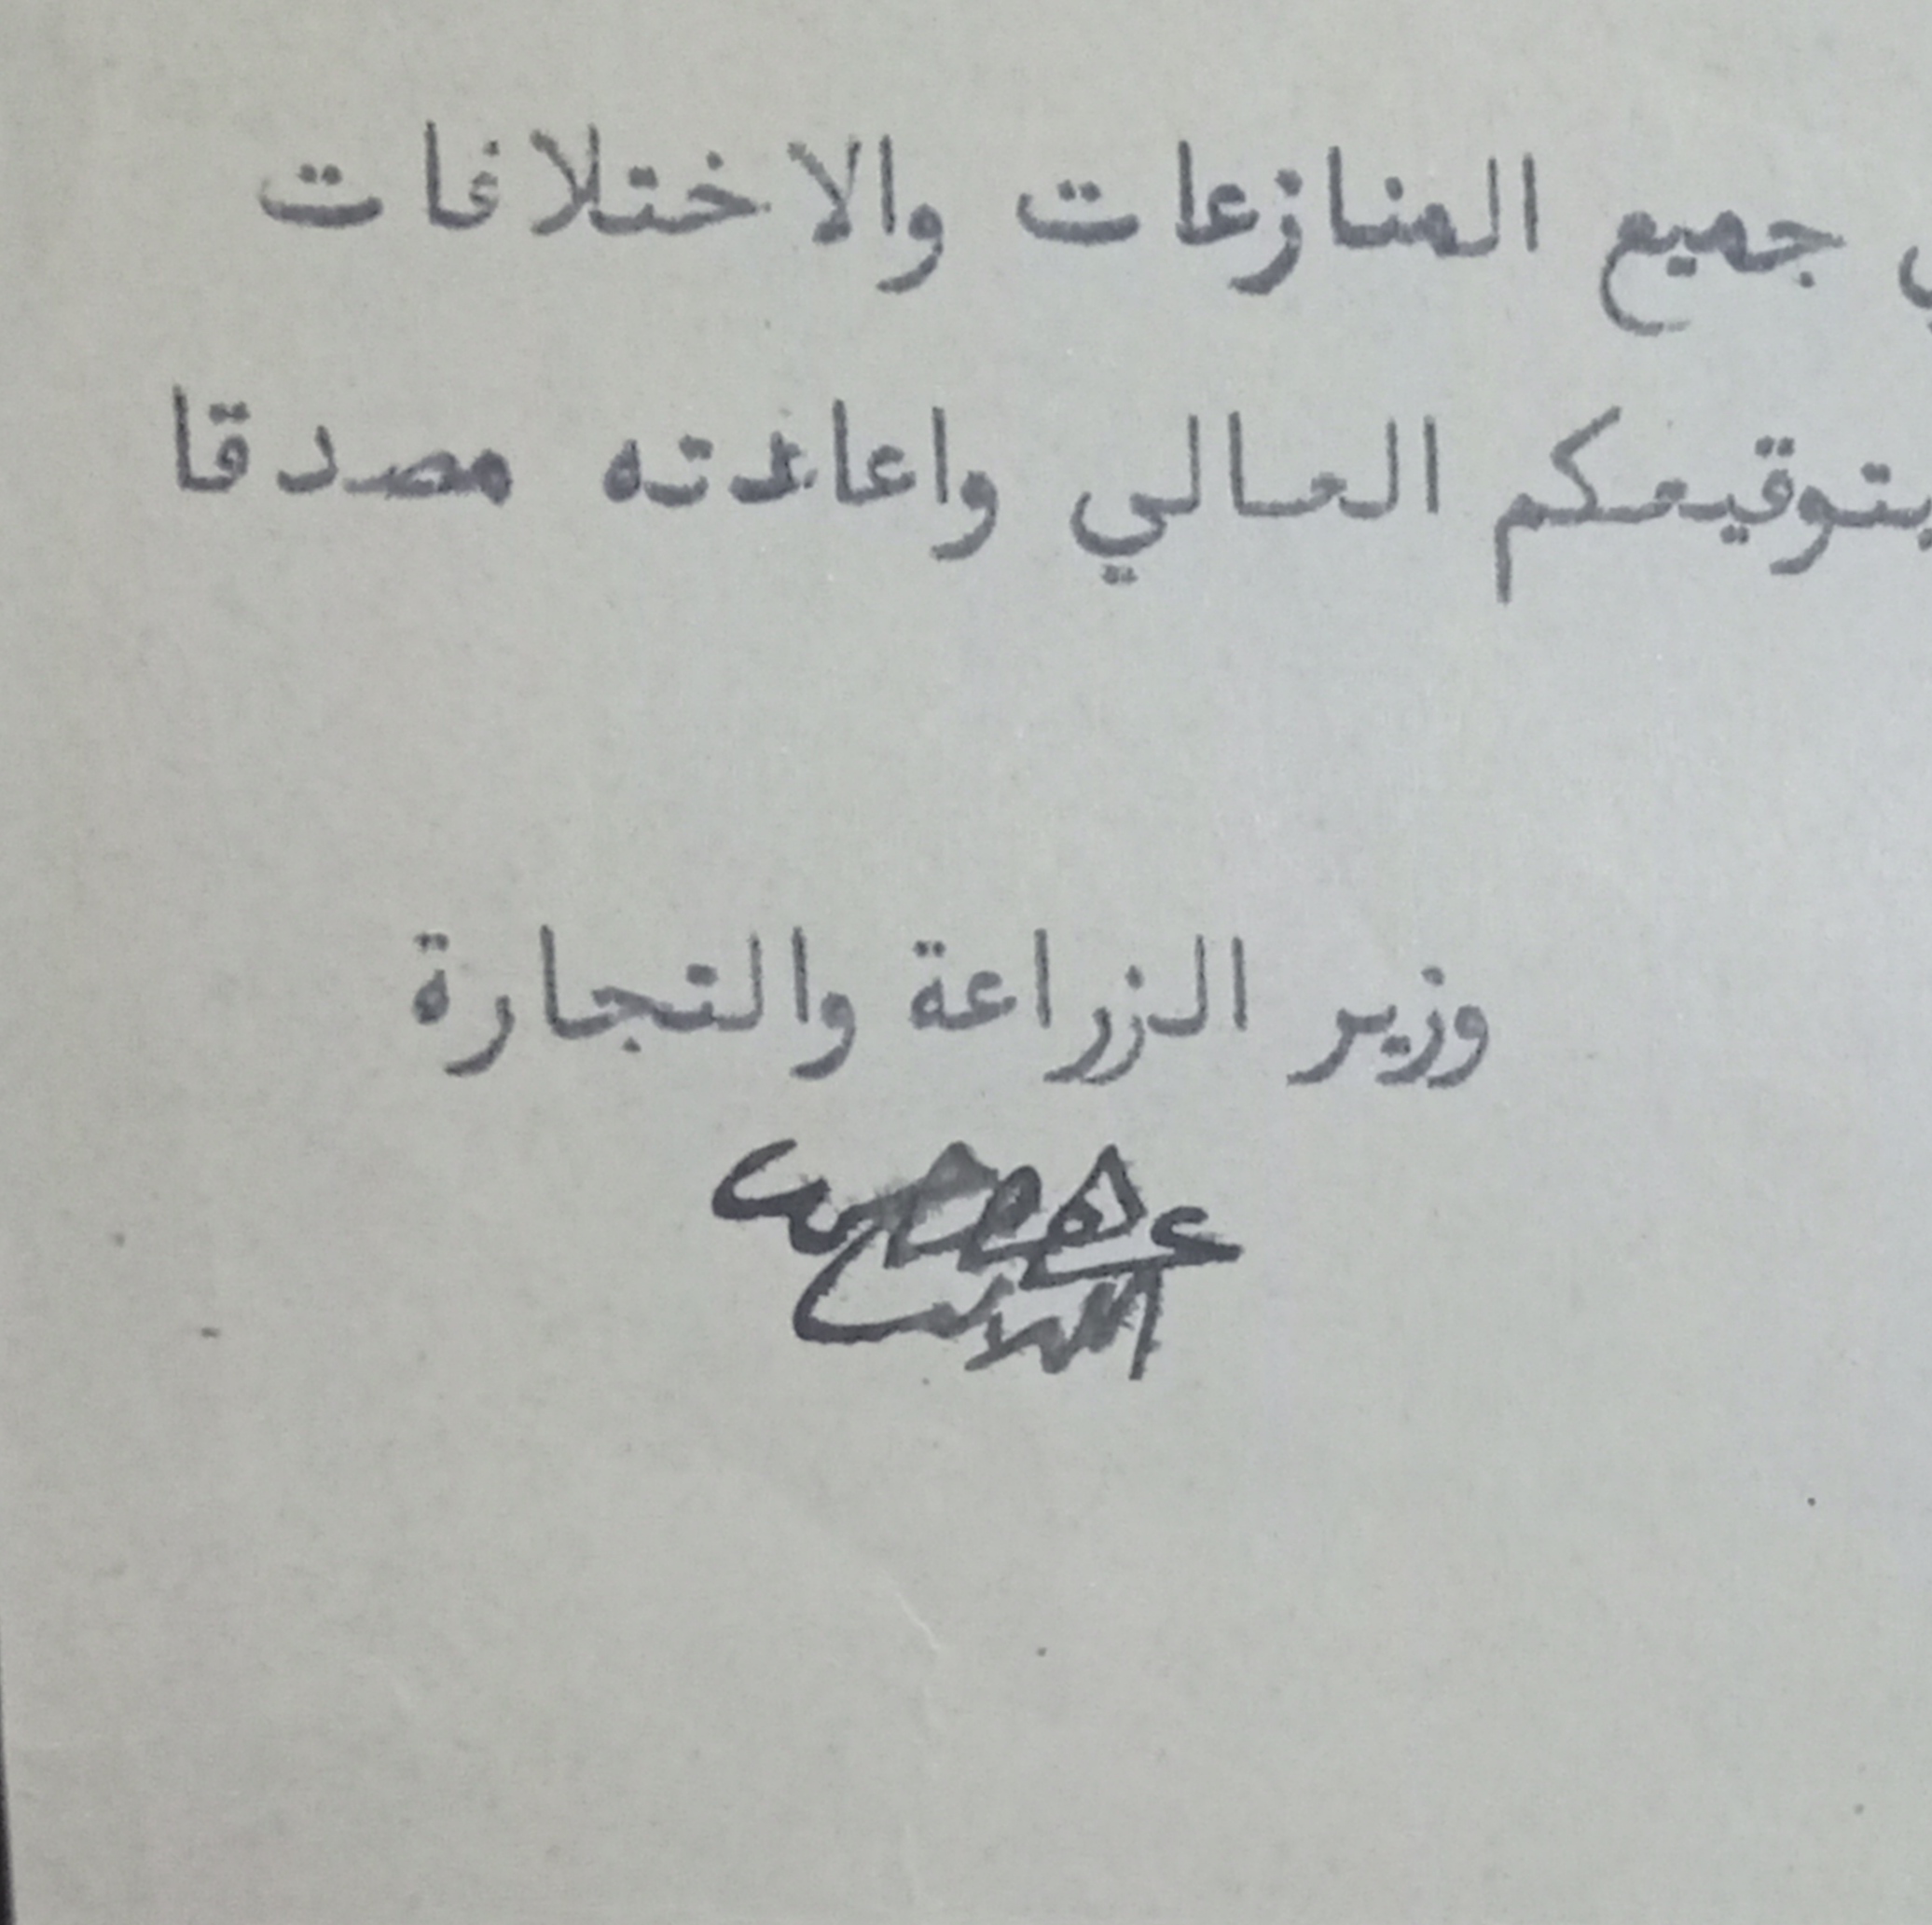 التاريخ السوري المعاصر - توقيع عبد القادر الكيلاني وزير الزراعة و التجارة في سورية عام 1929